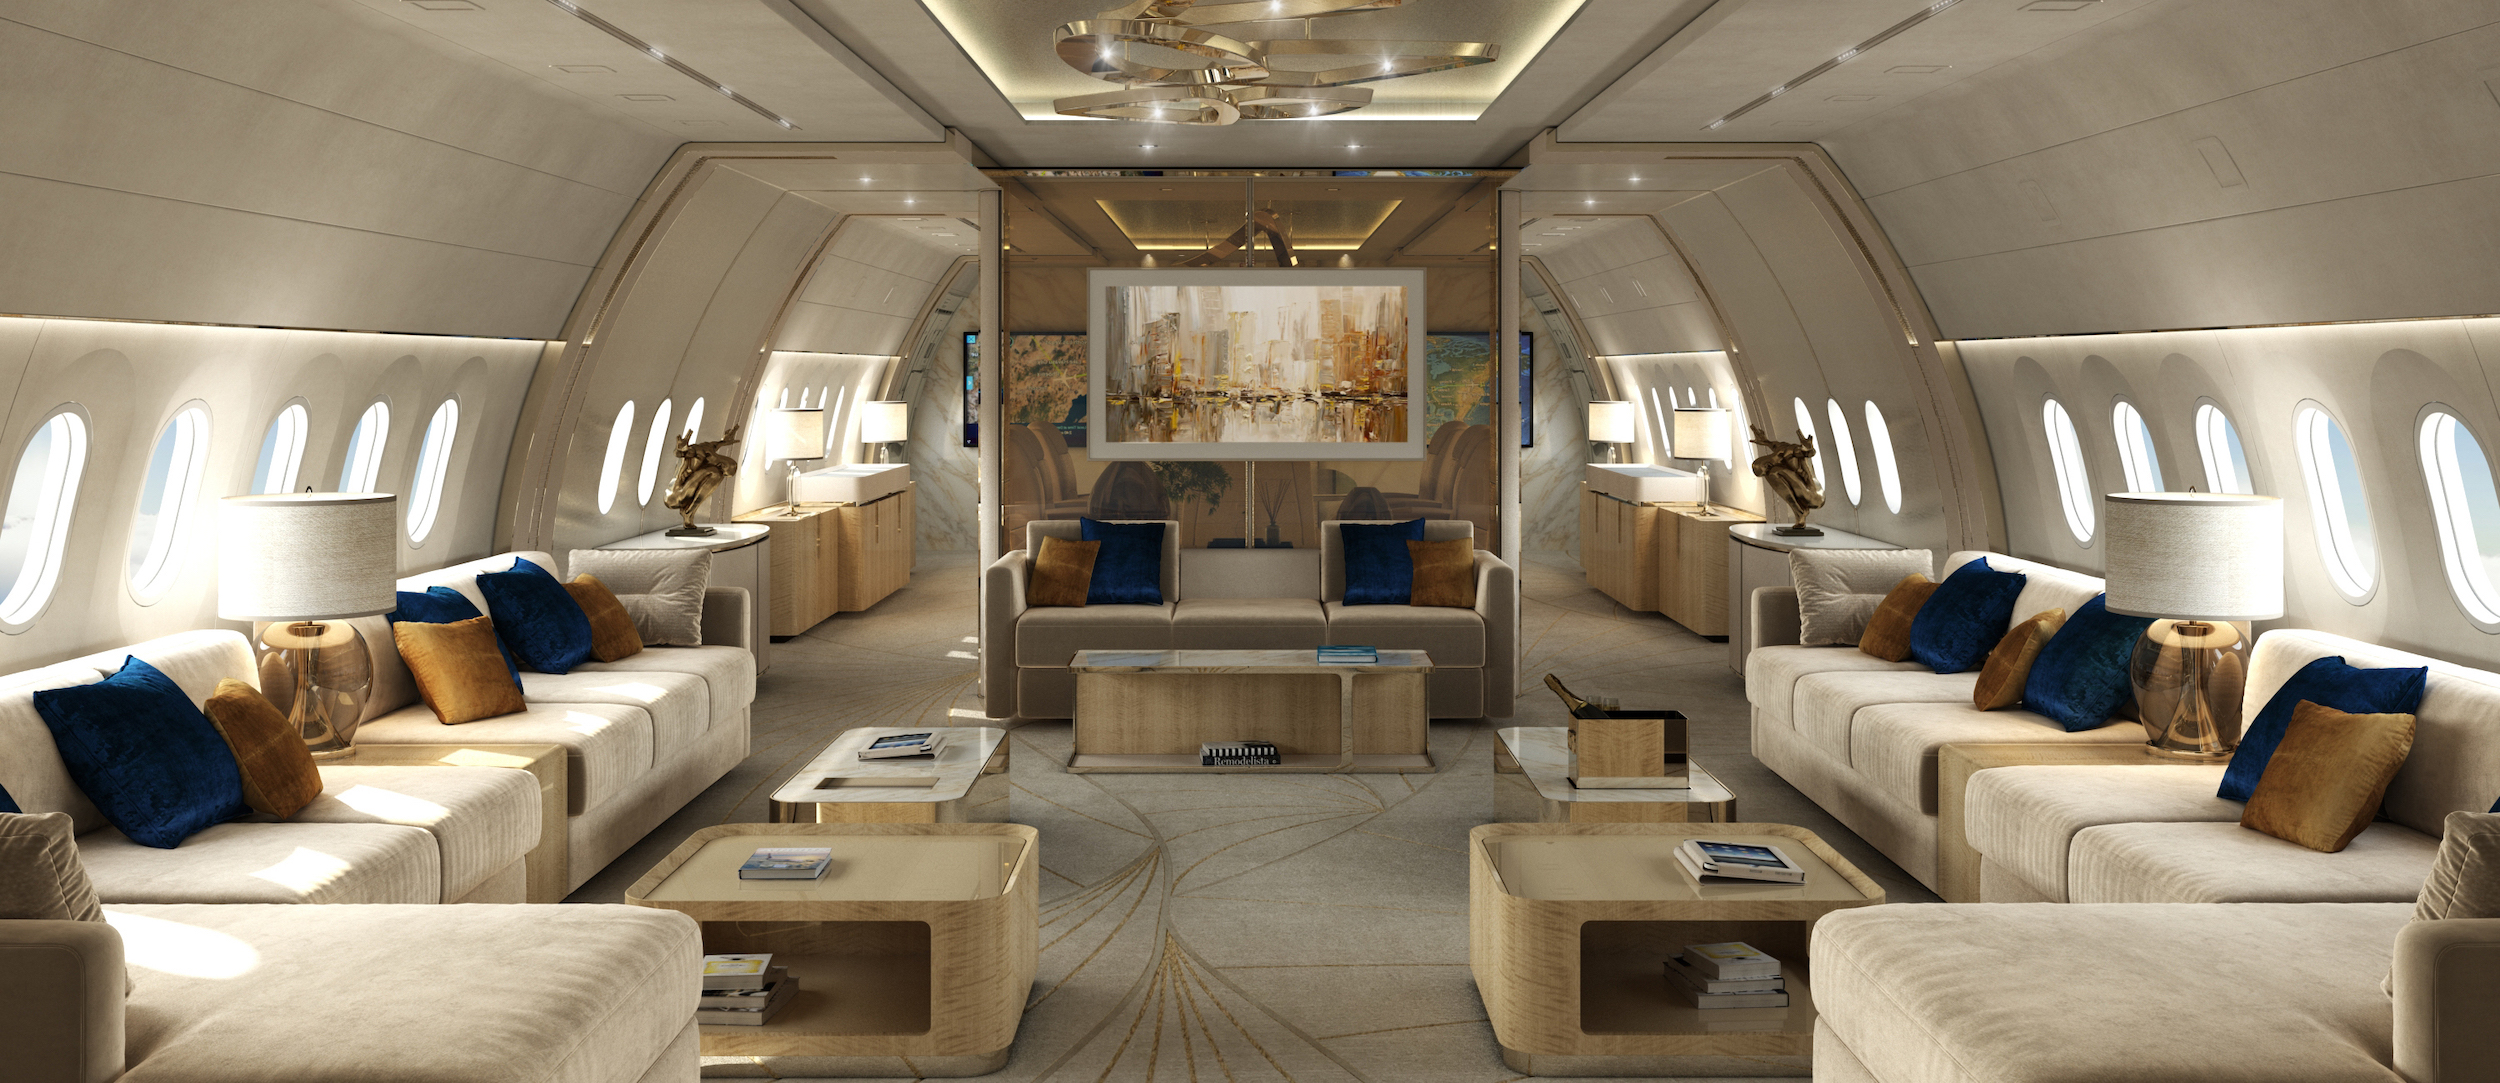 futuristic airplane interior